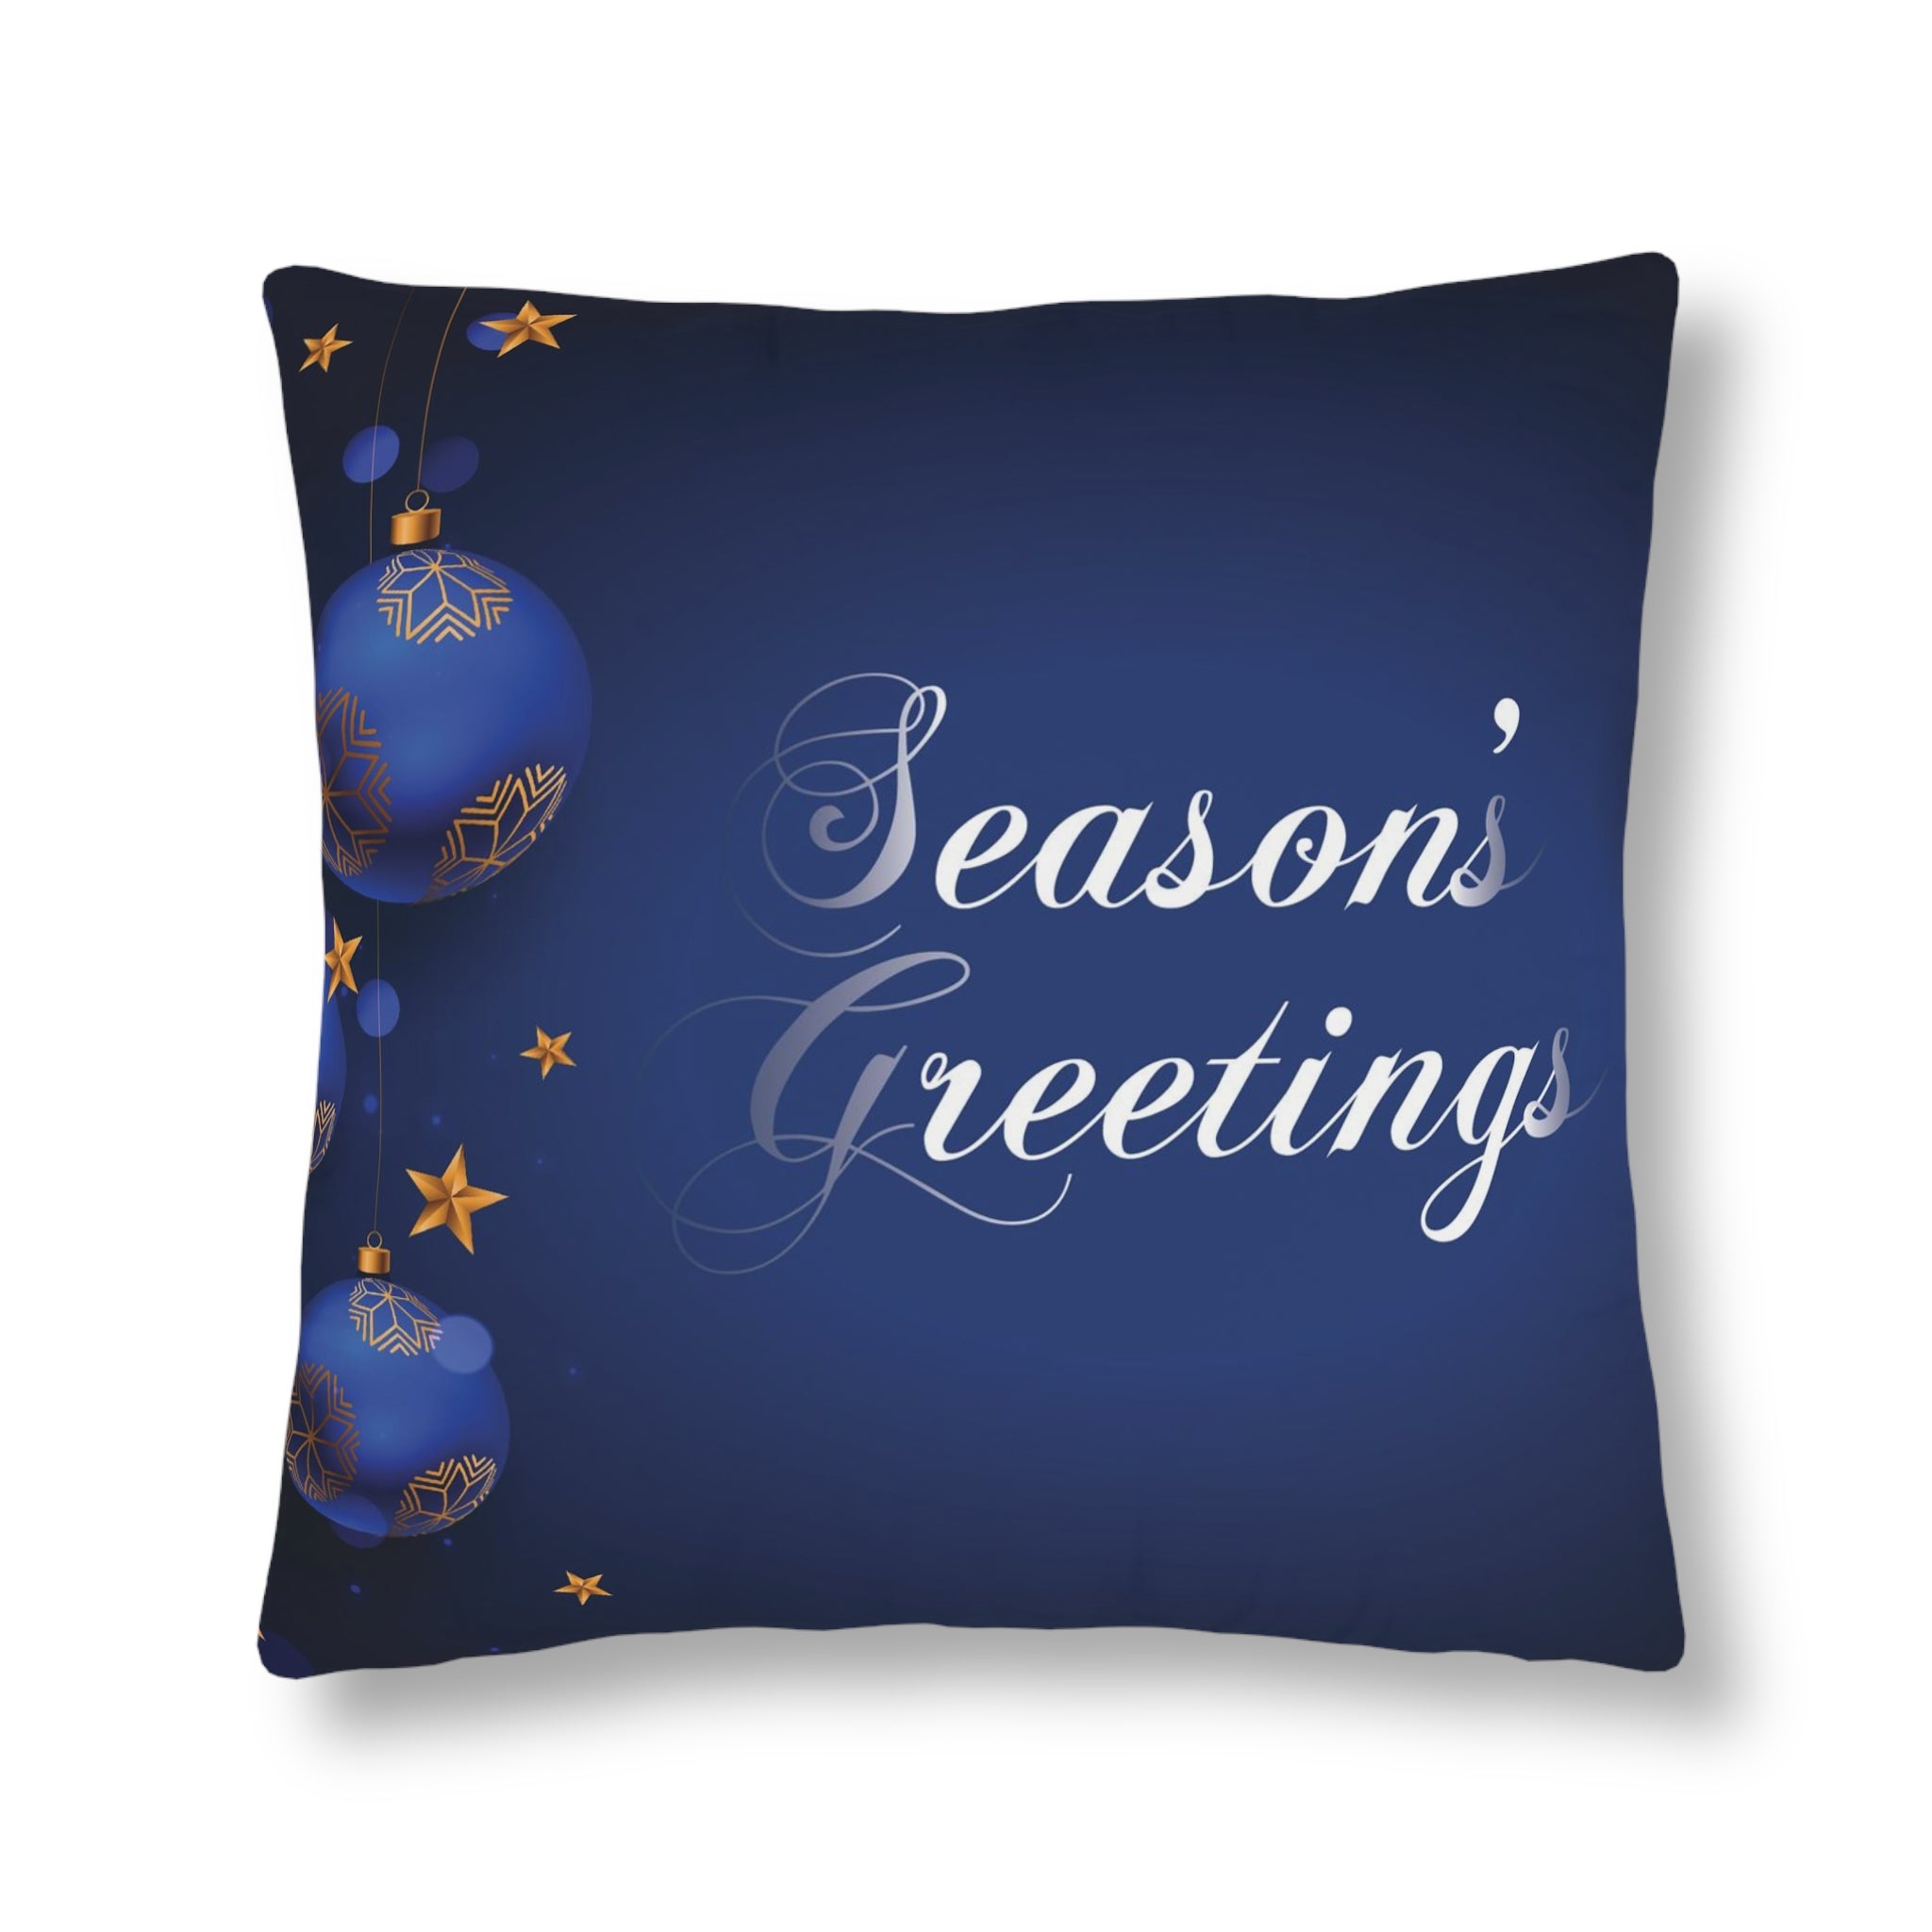 Christmas Waterproof Pillows, Dark Blue